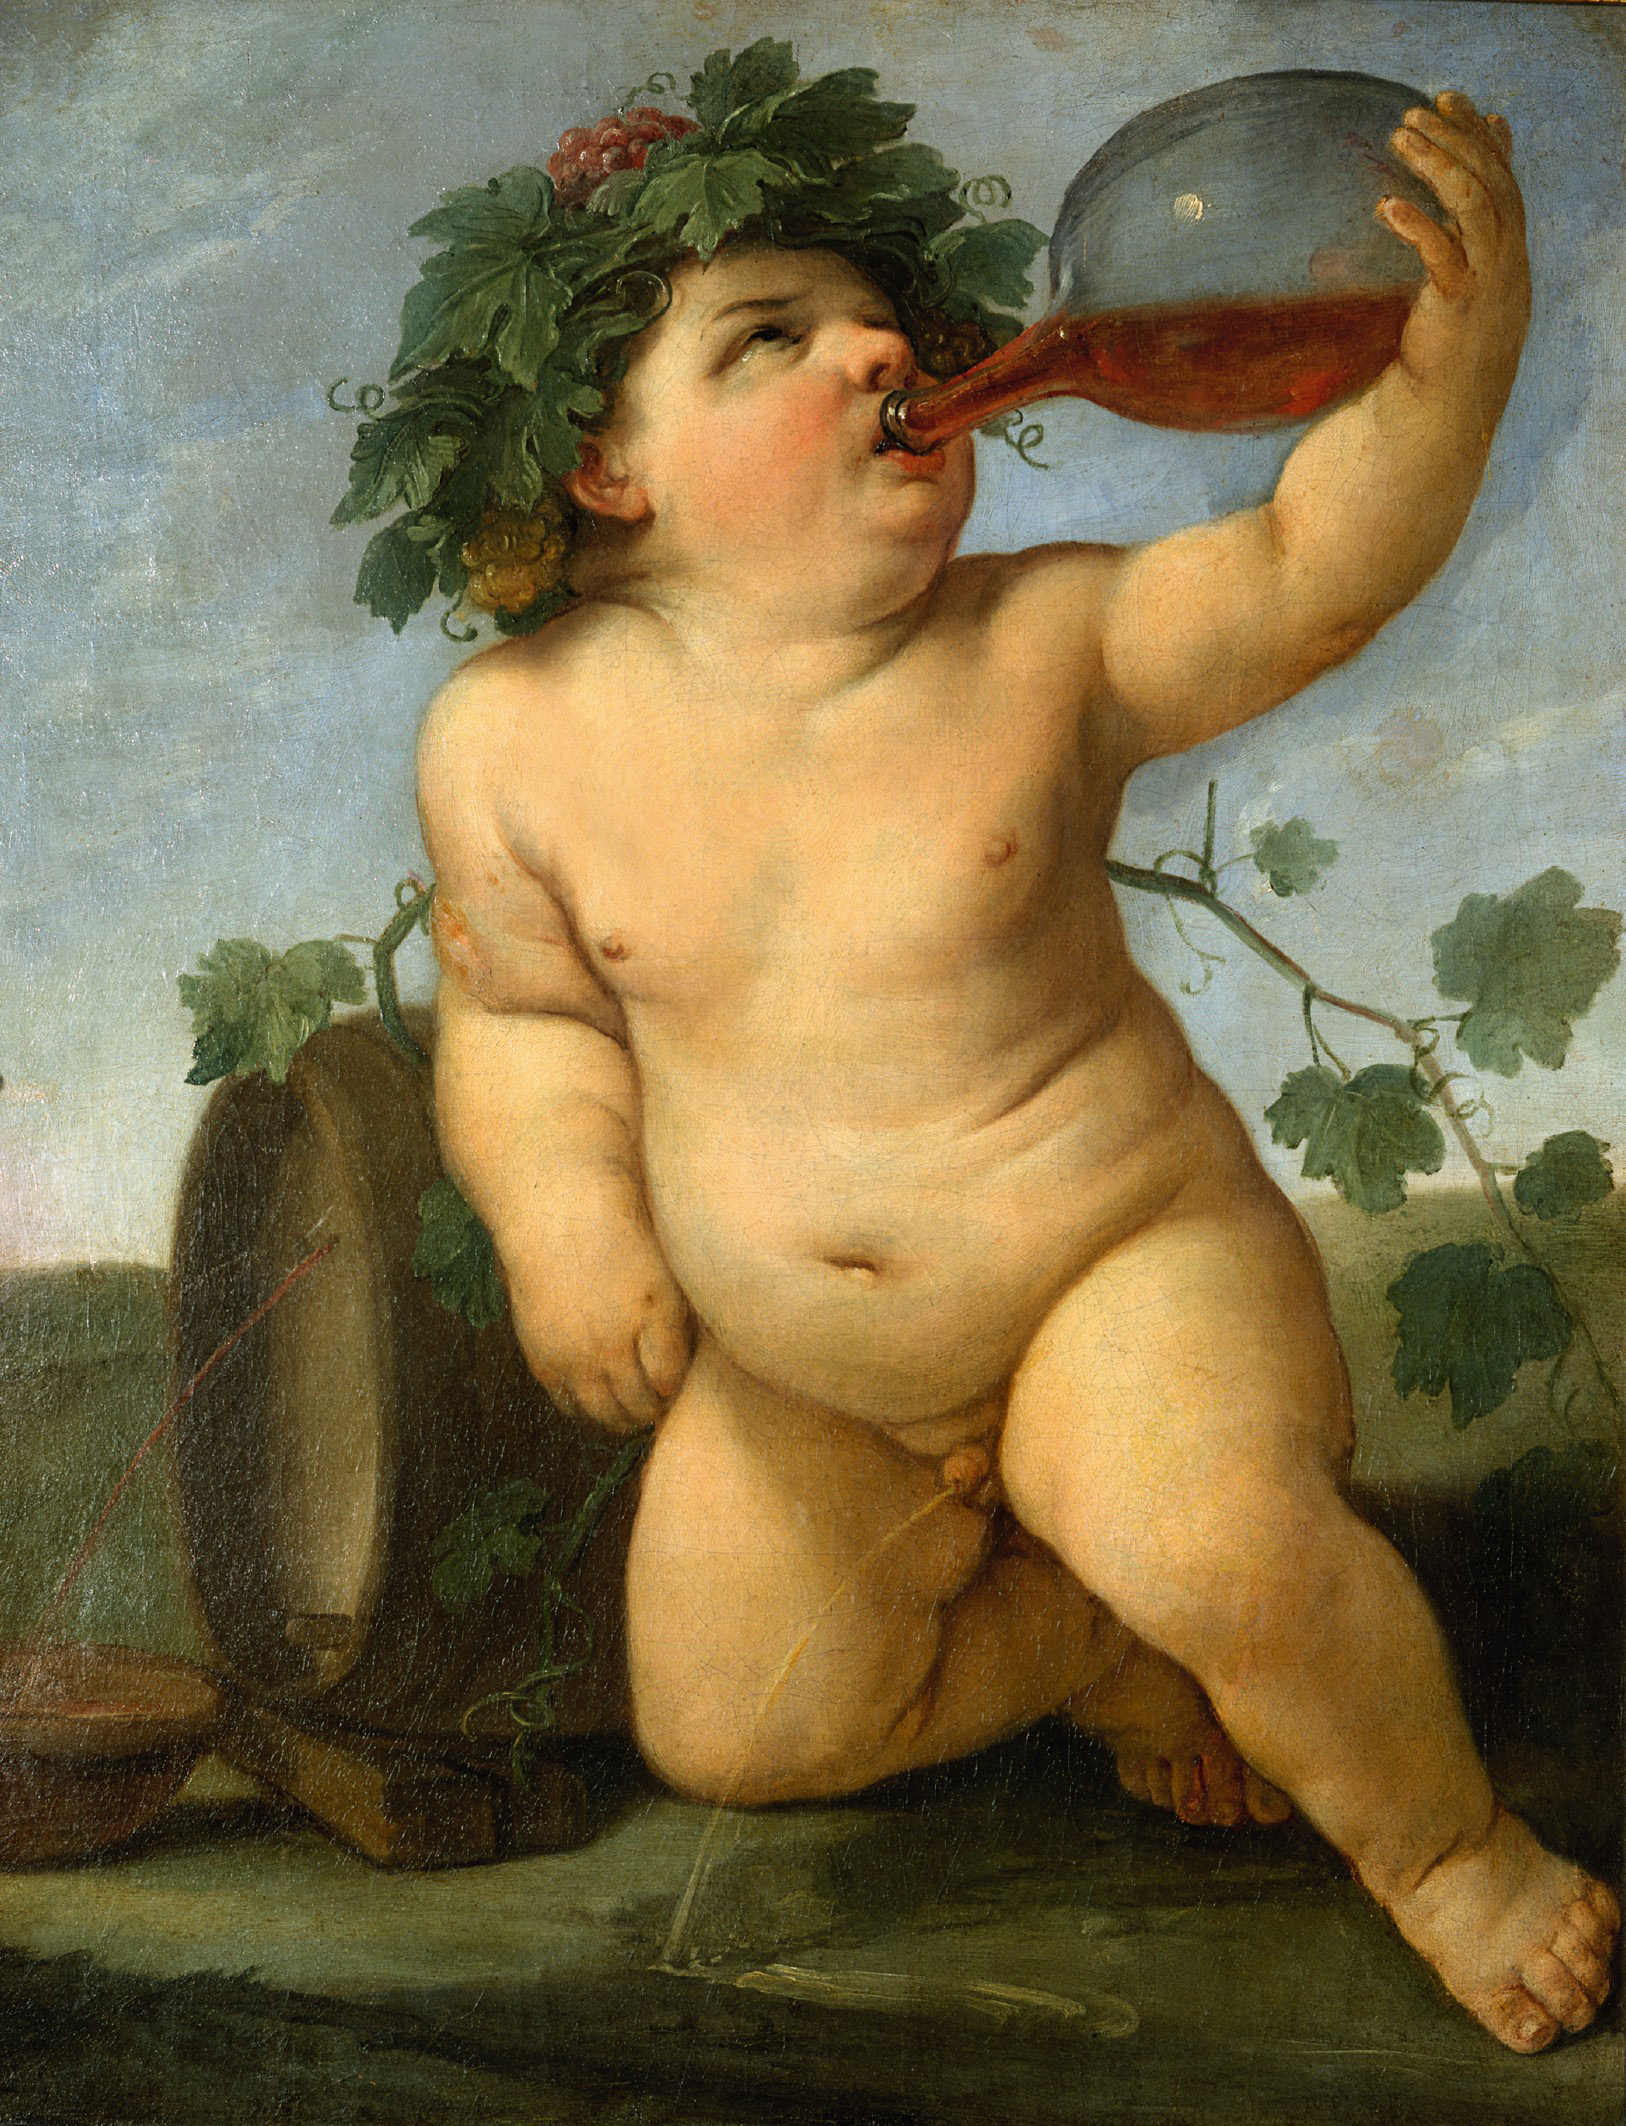 Drinking Bacchus by Guido Reni - circa 1623 - 72 x 56 cm Staatliche Kunstsammlungen Dresden